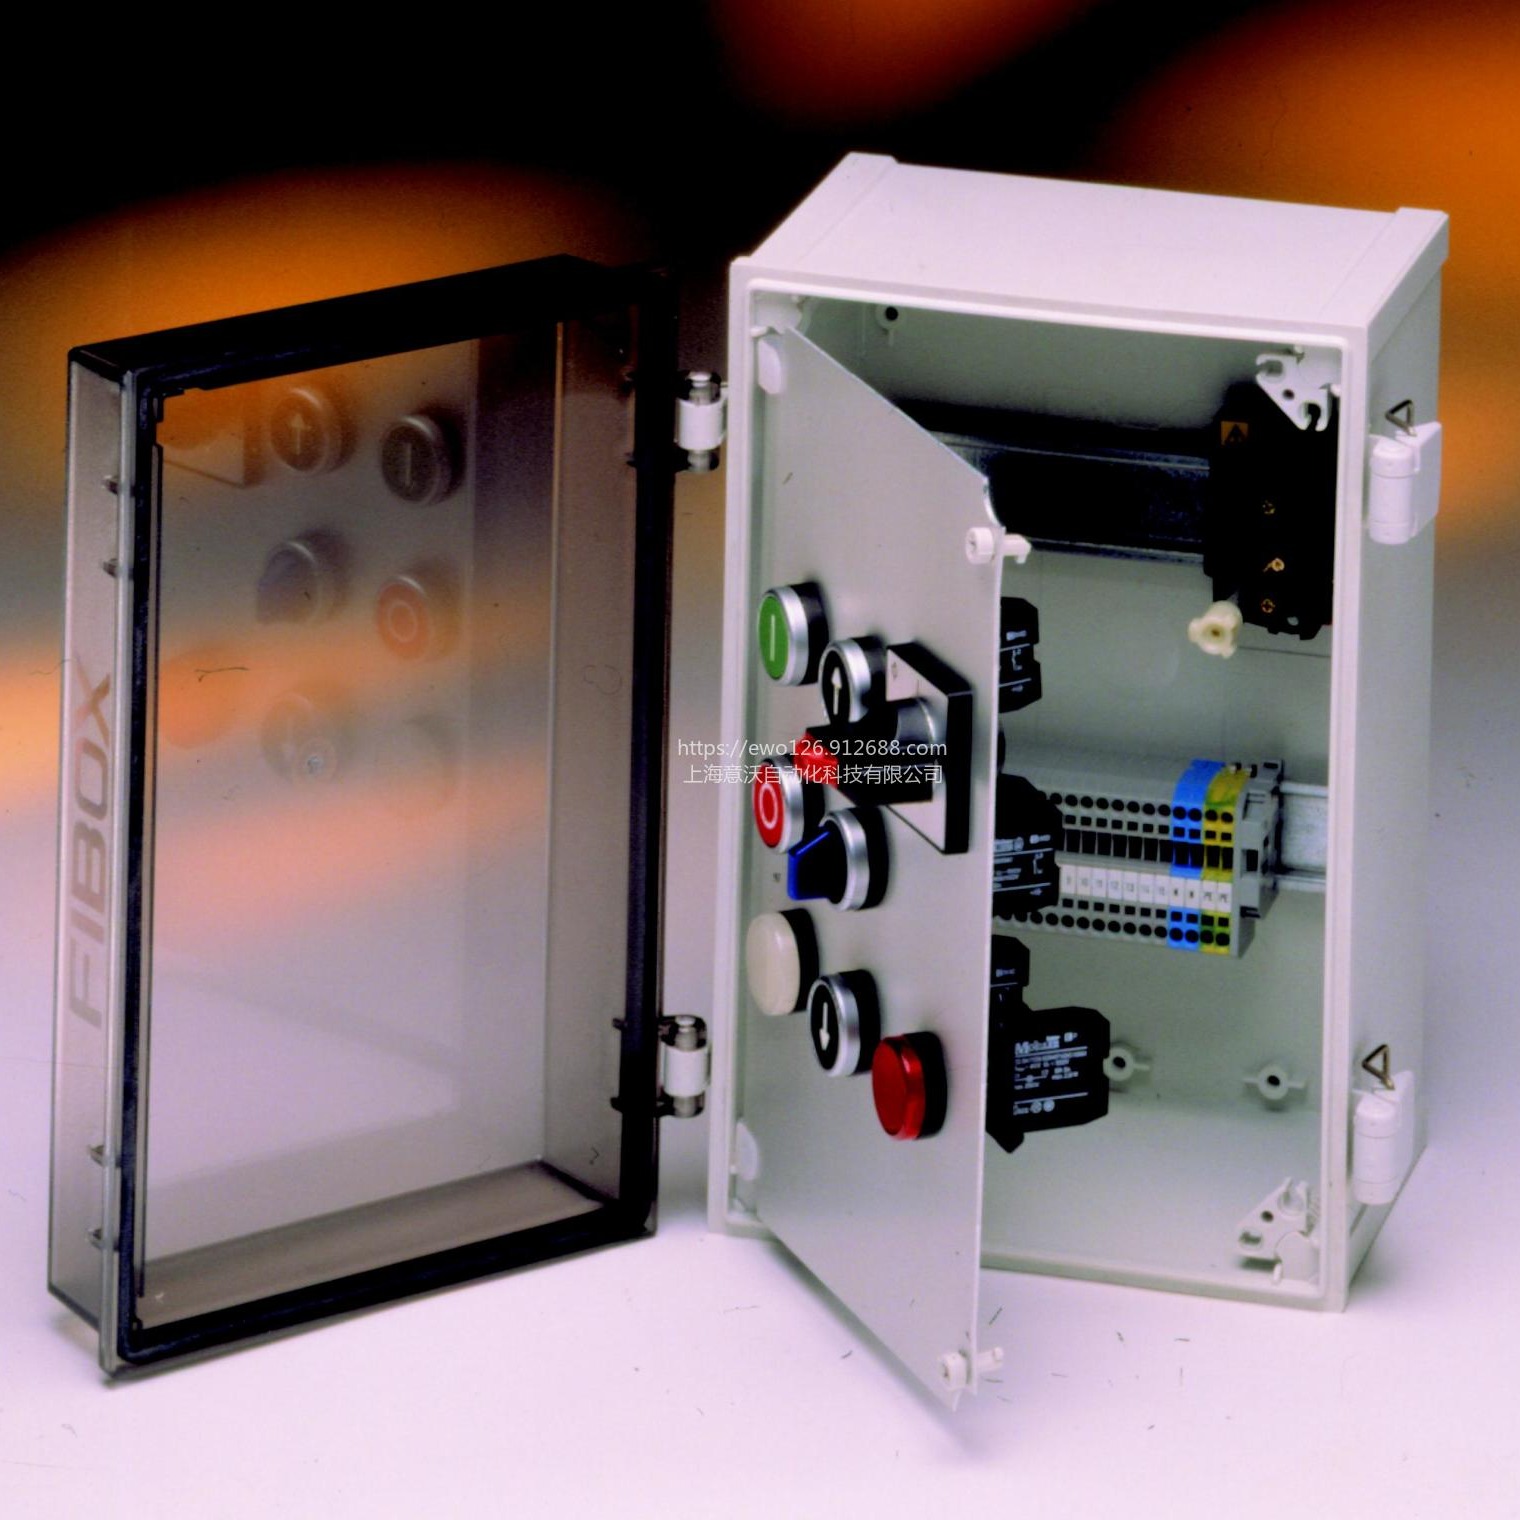 户外透明聚碳酸酯塑料配电箱 工控便携接线箱 FIBOX CAB PC/ABS壁挂式电气密封箱 铰链搭扣型